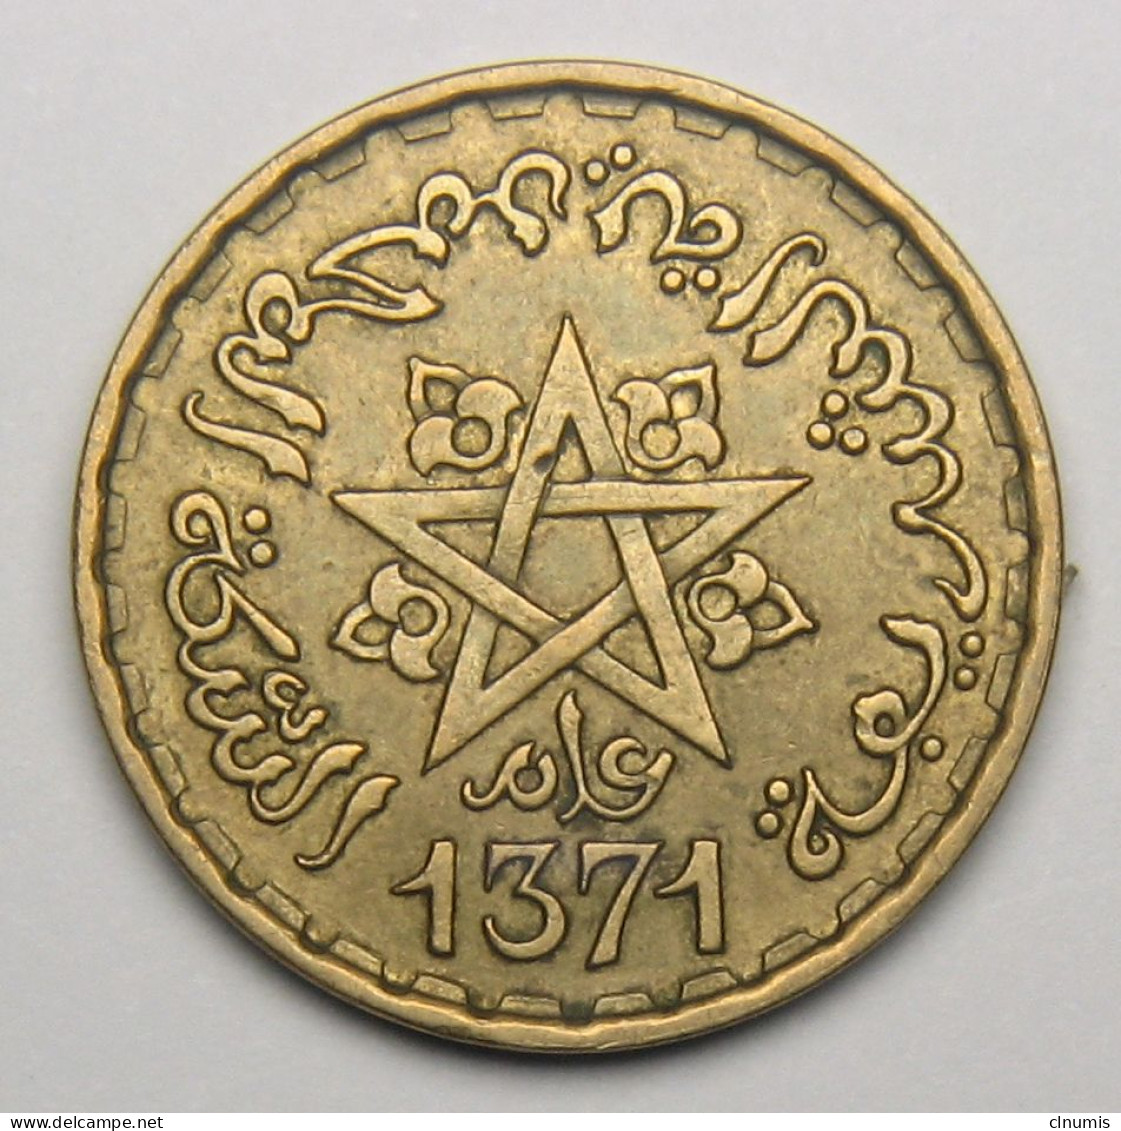 Maroc, Protectorat Français, 10 Francs 1952 (1371), Bronze-aluminium - Morocco